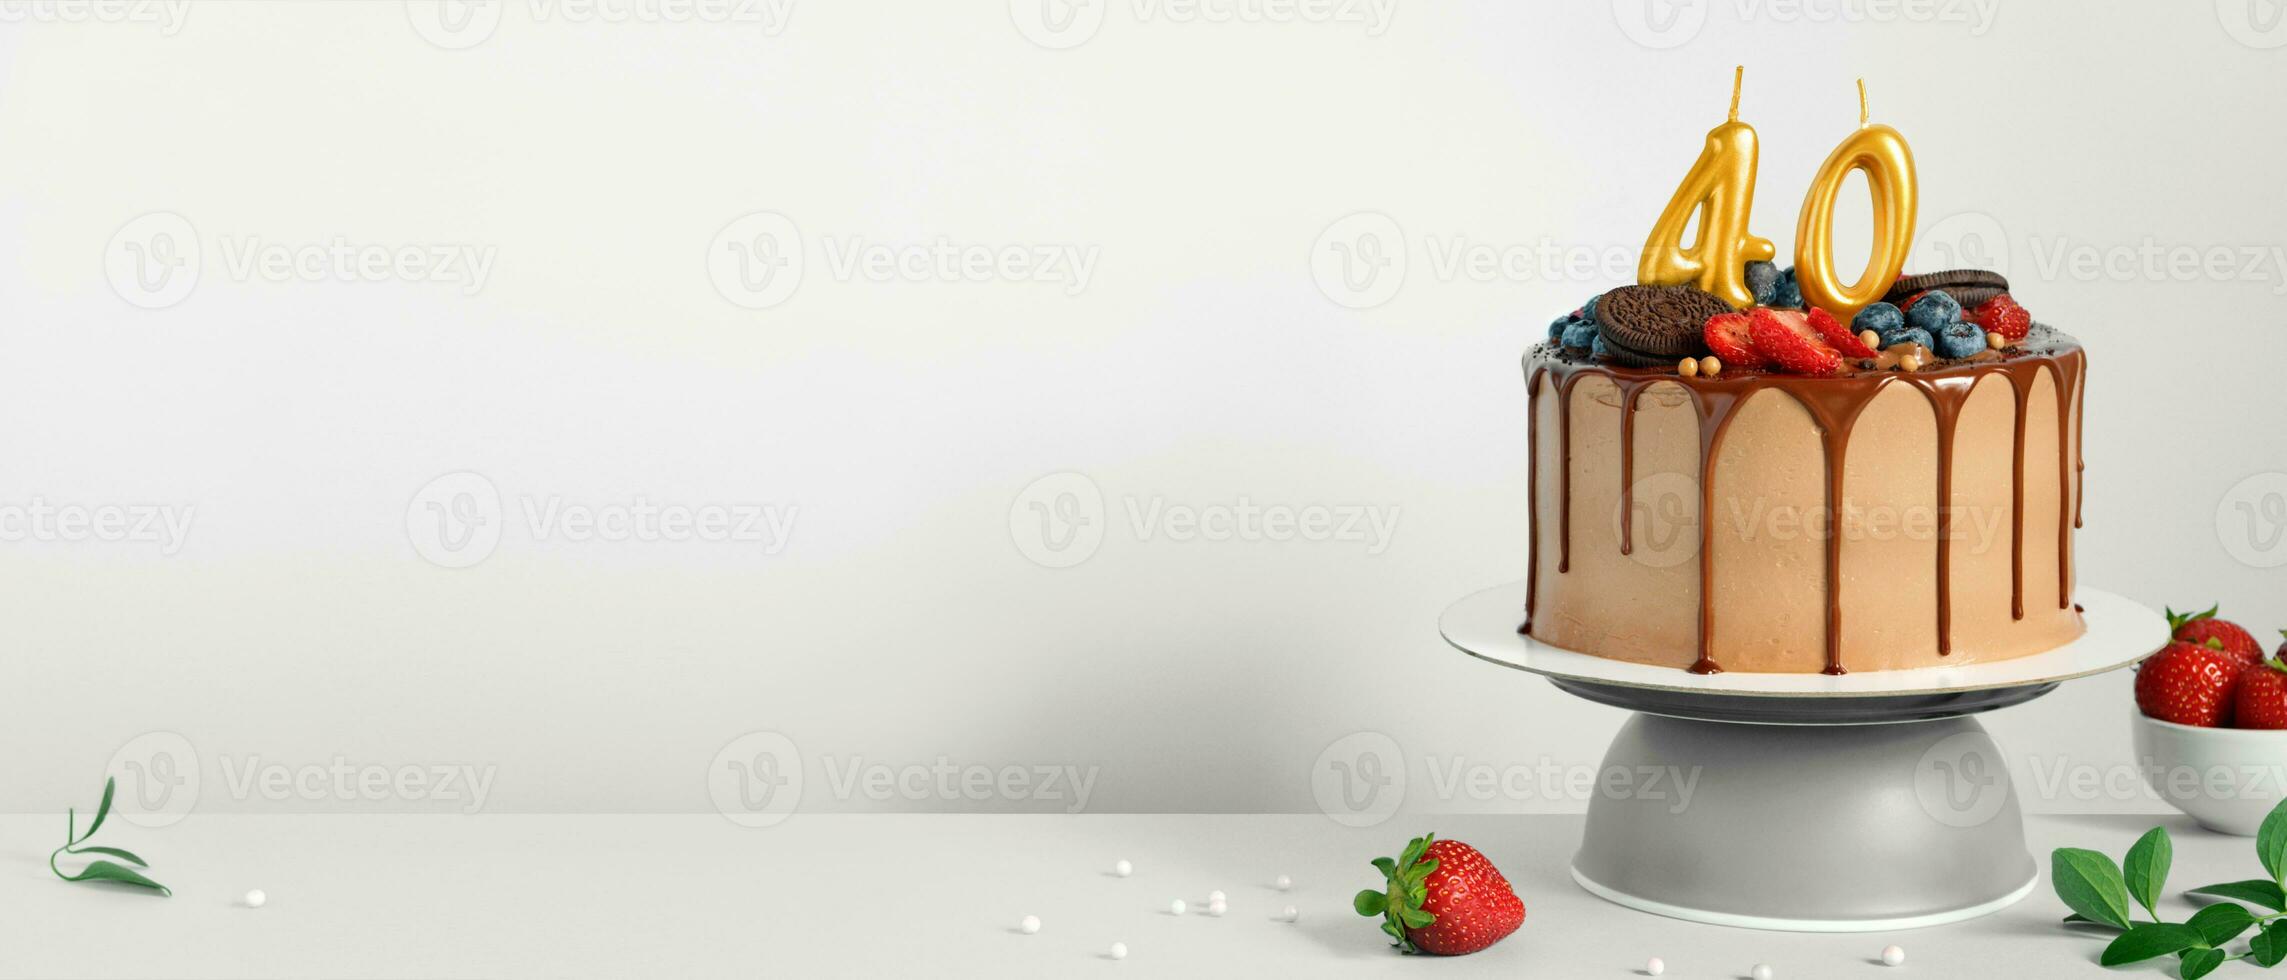 baner med choklad födelsedag kaka med bär, småkakor och siffra fyrtio gyllene ljus på vit bakgrund, kopia Plats foto